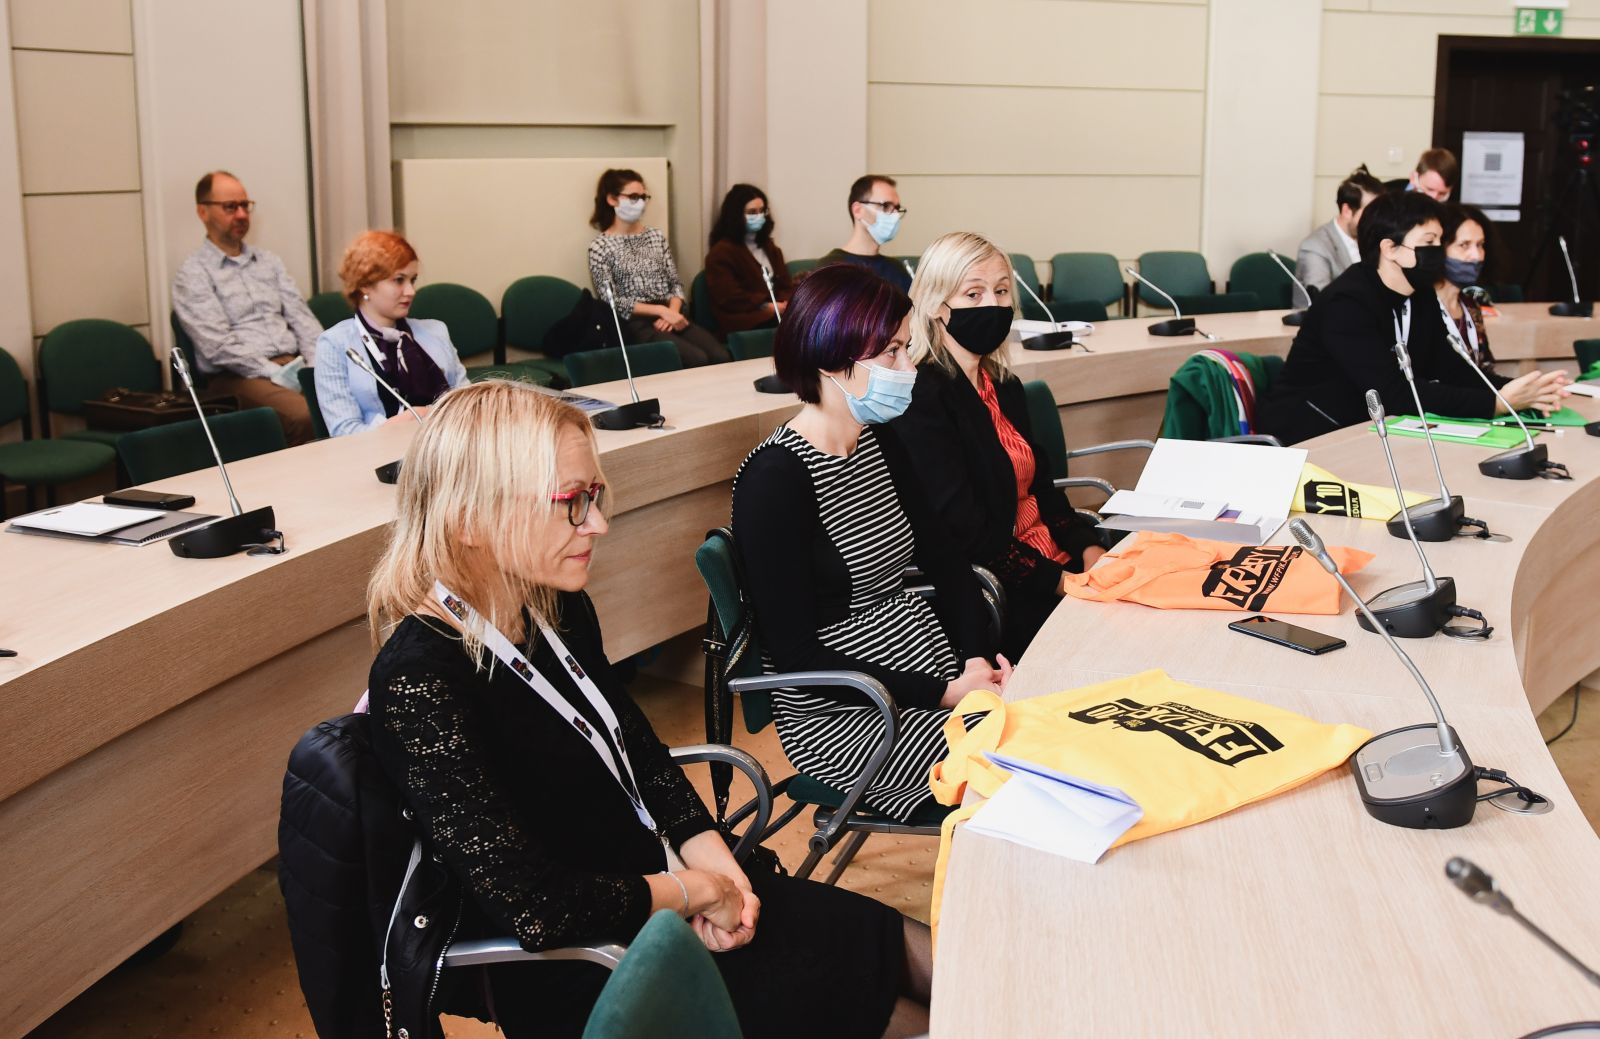 Słuchacze konferencji siedzą w Salonie Mickiewicza pod Kopułą.